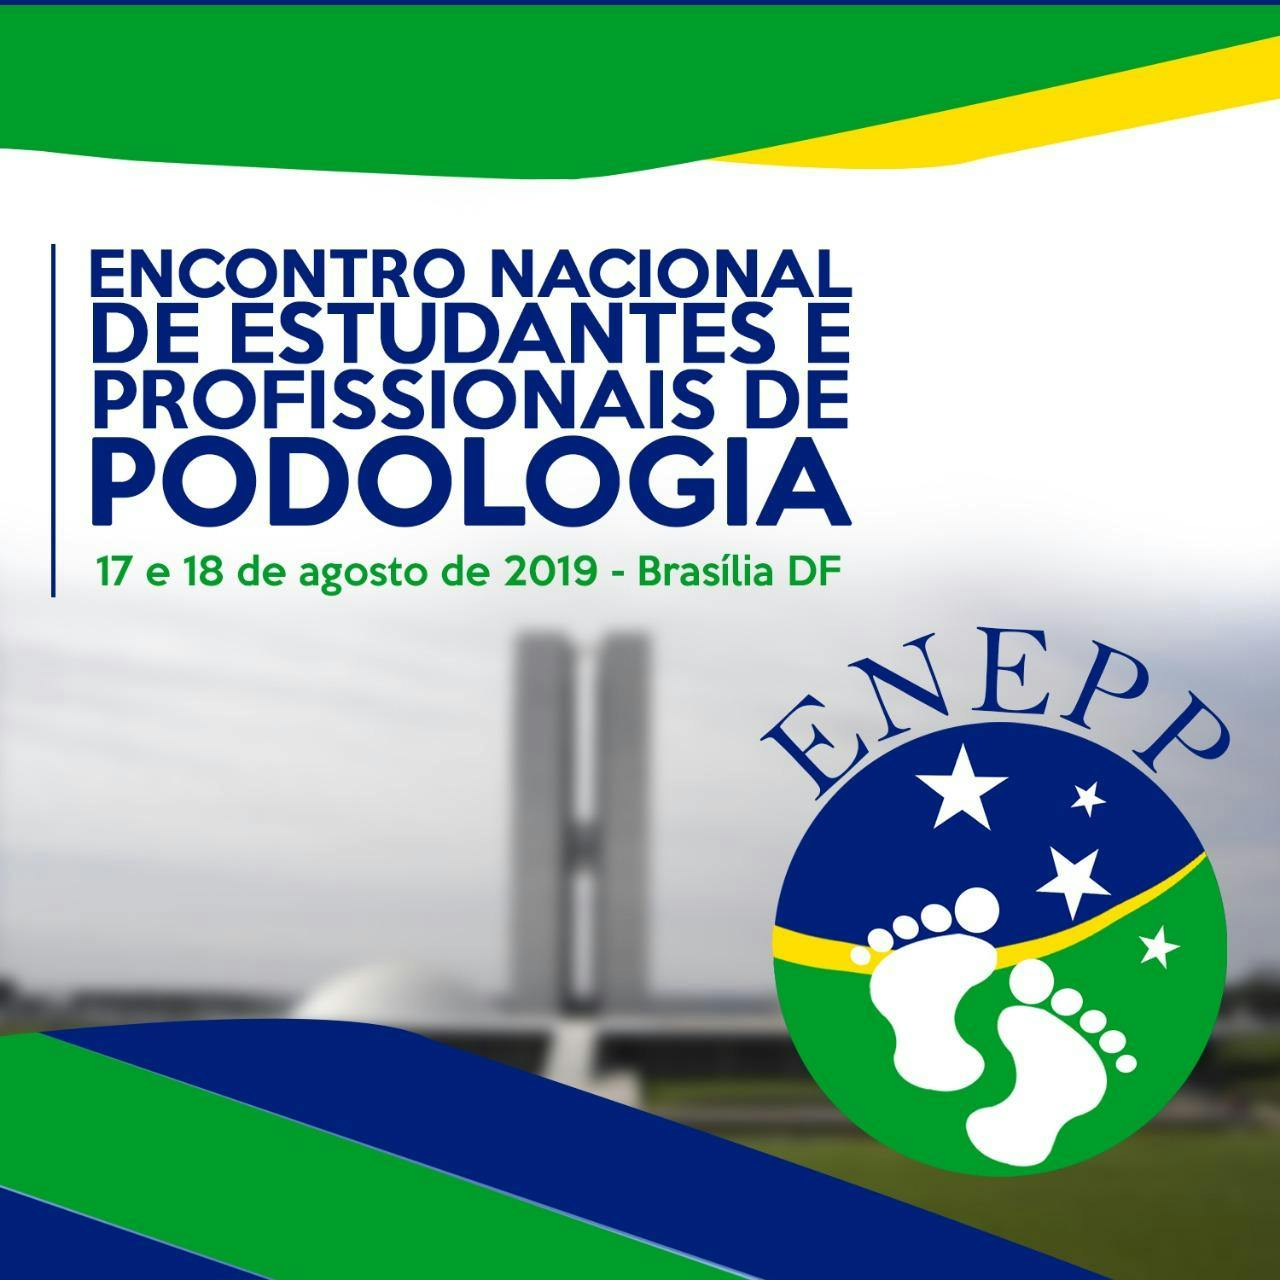 ENEPP - Encontro Nacional de Estudantes e Profissionais de Podologia